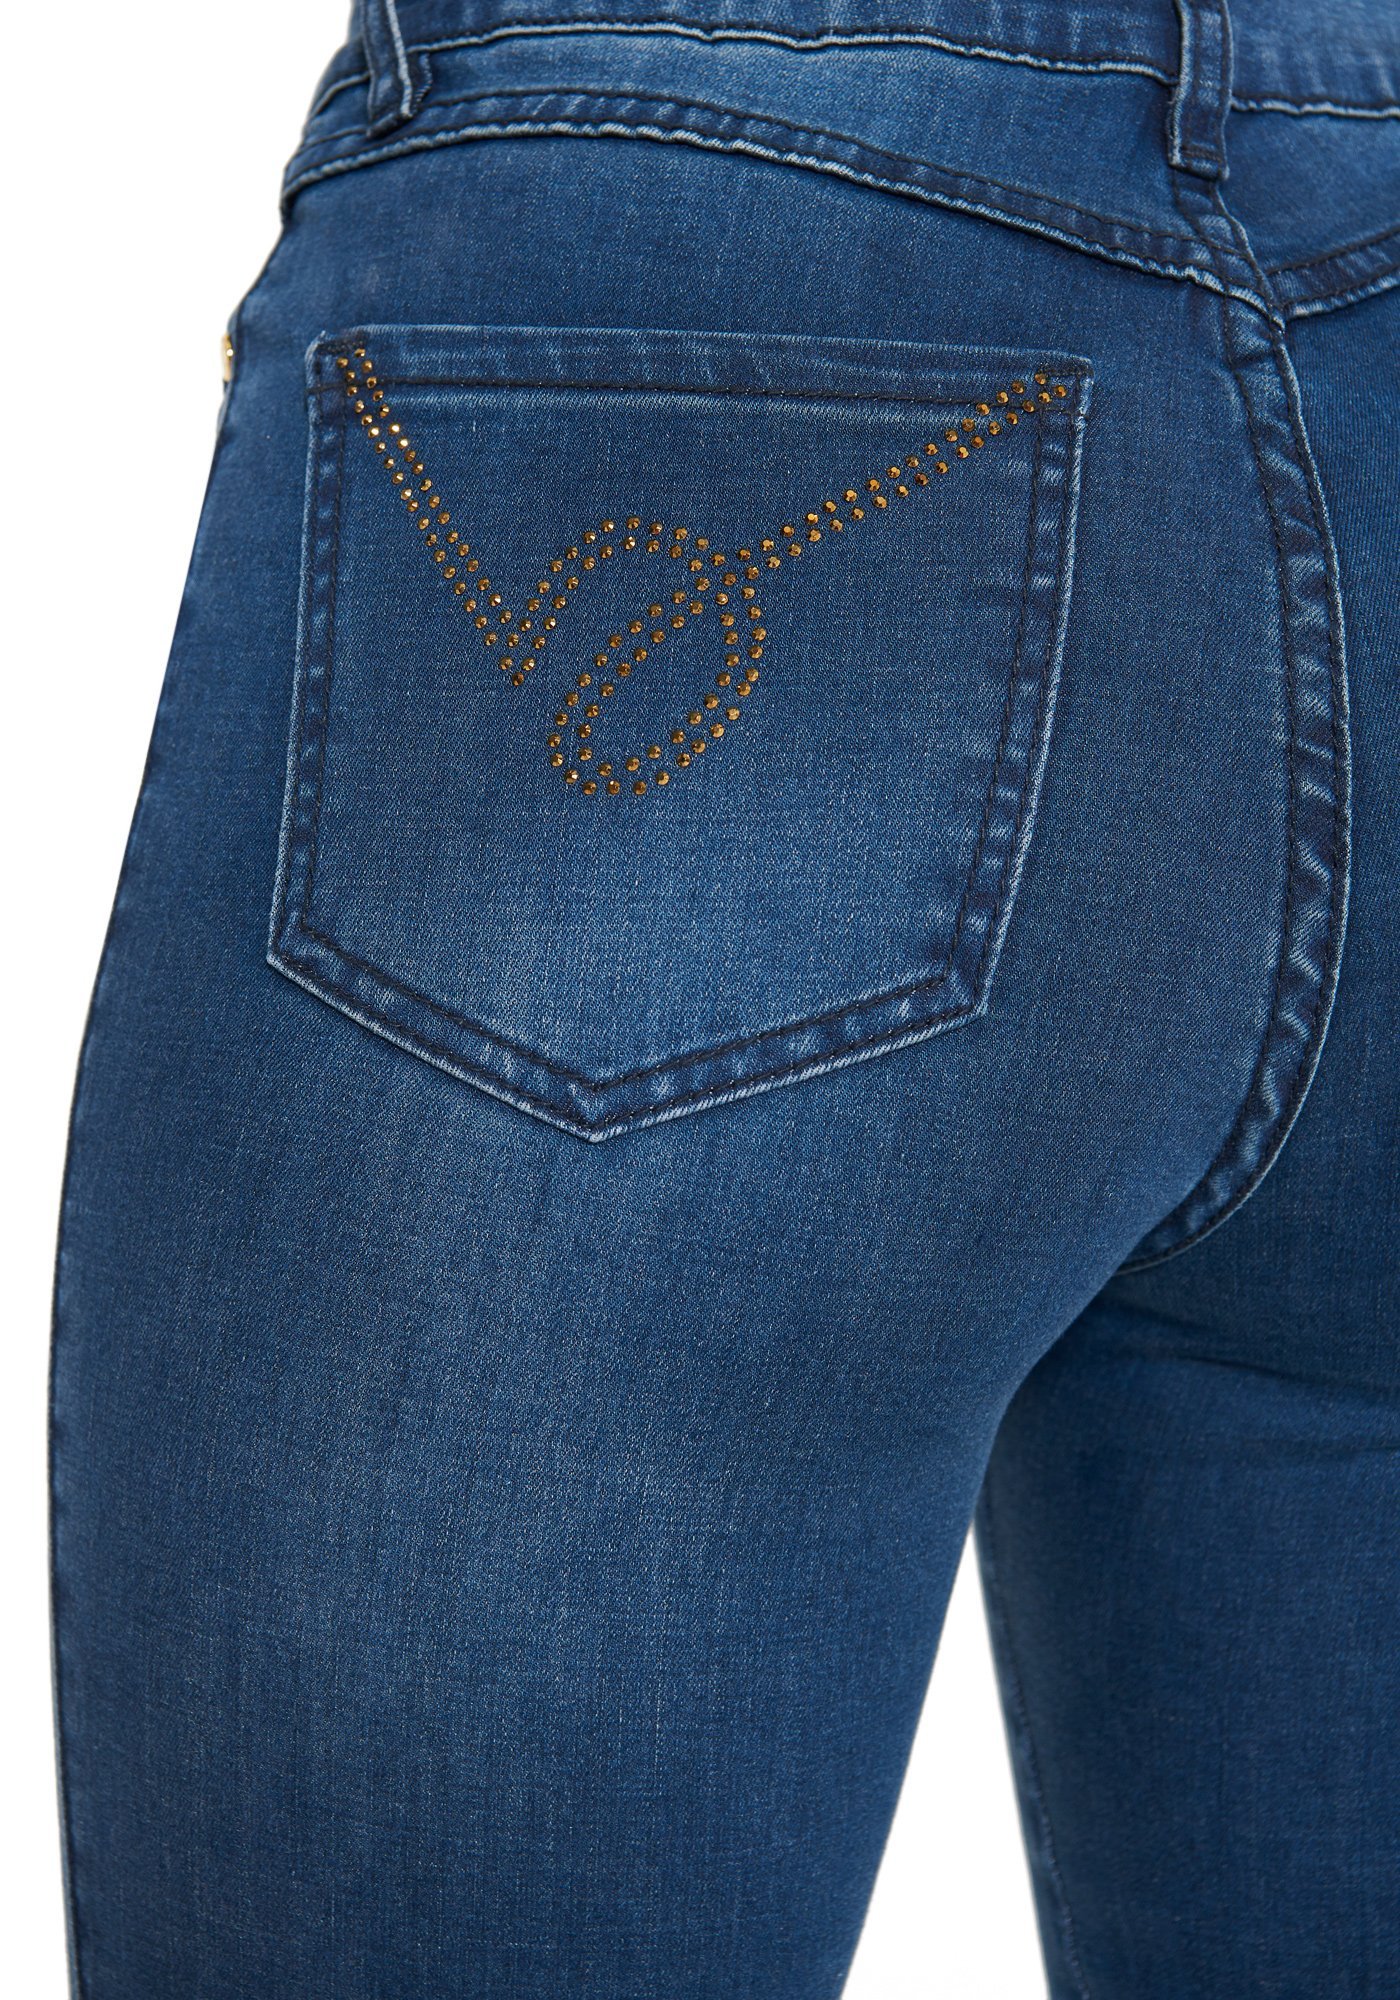 Bebe Women's Crystal B Skinny Jeans, Size 30 in Indigo